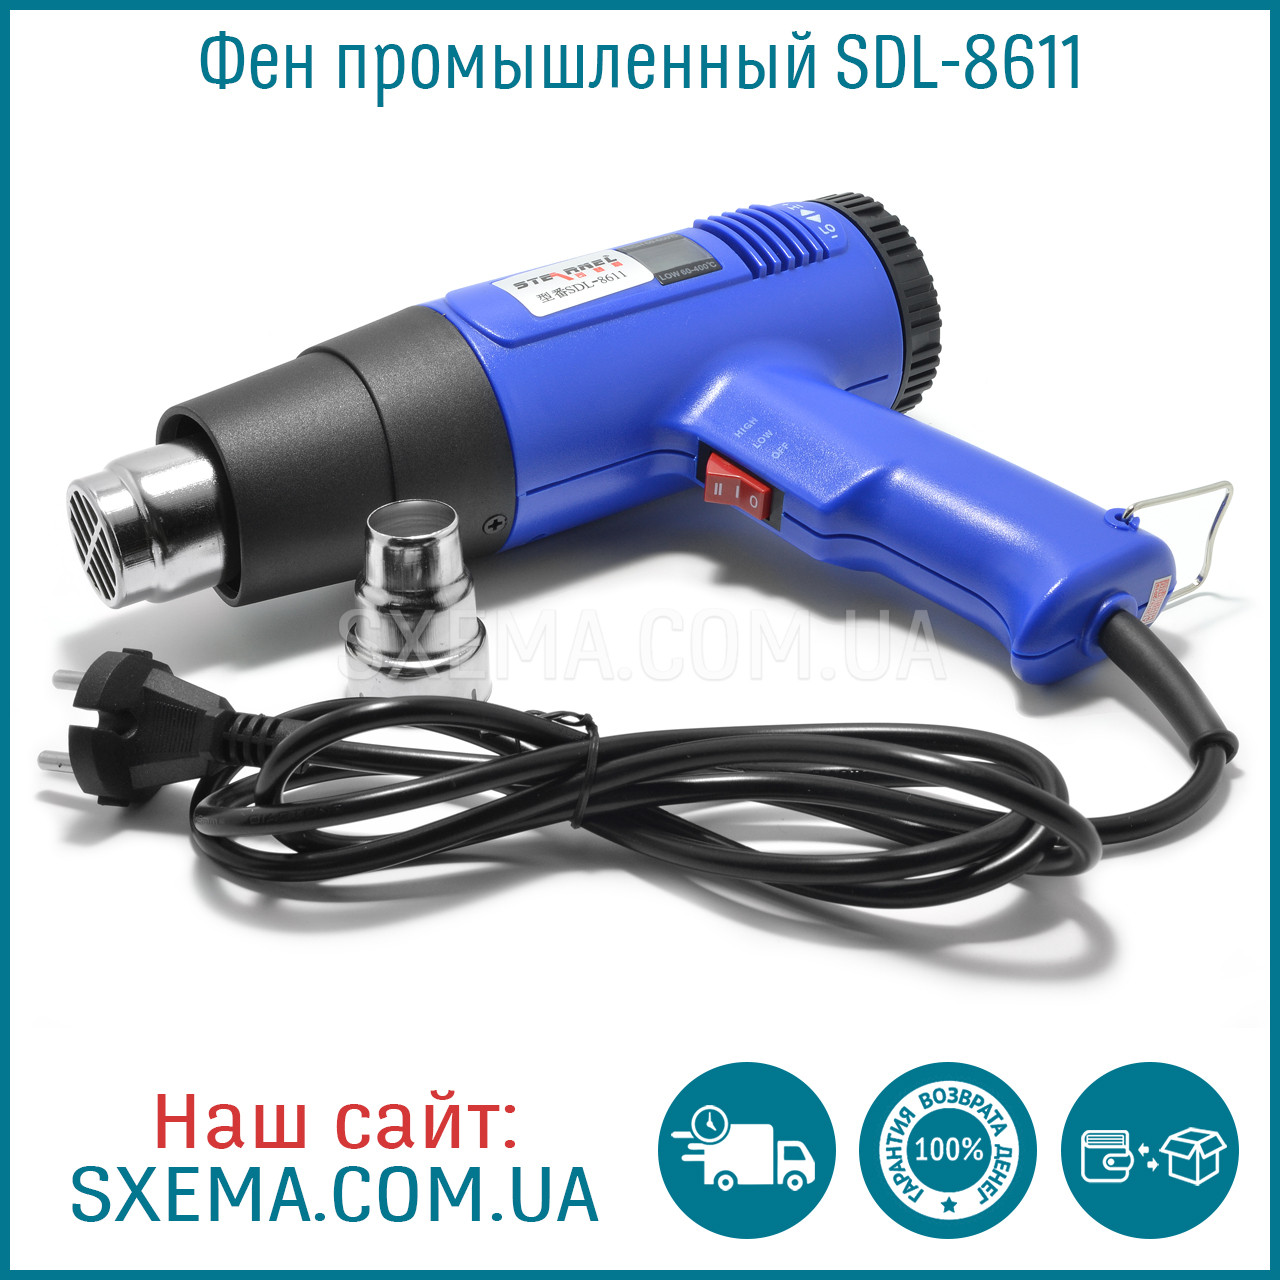 Термофен технічний SDL-8611 з дисплеєм